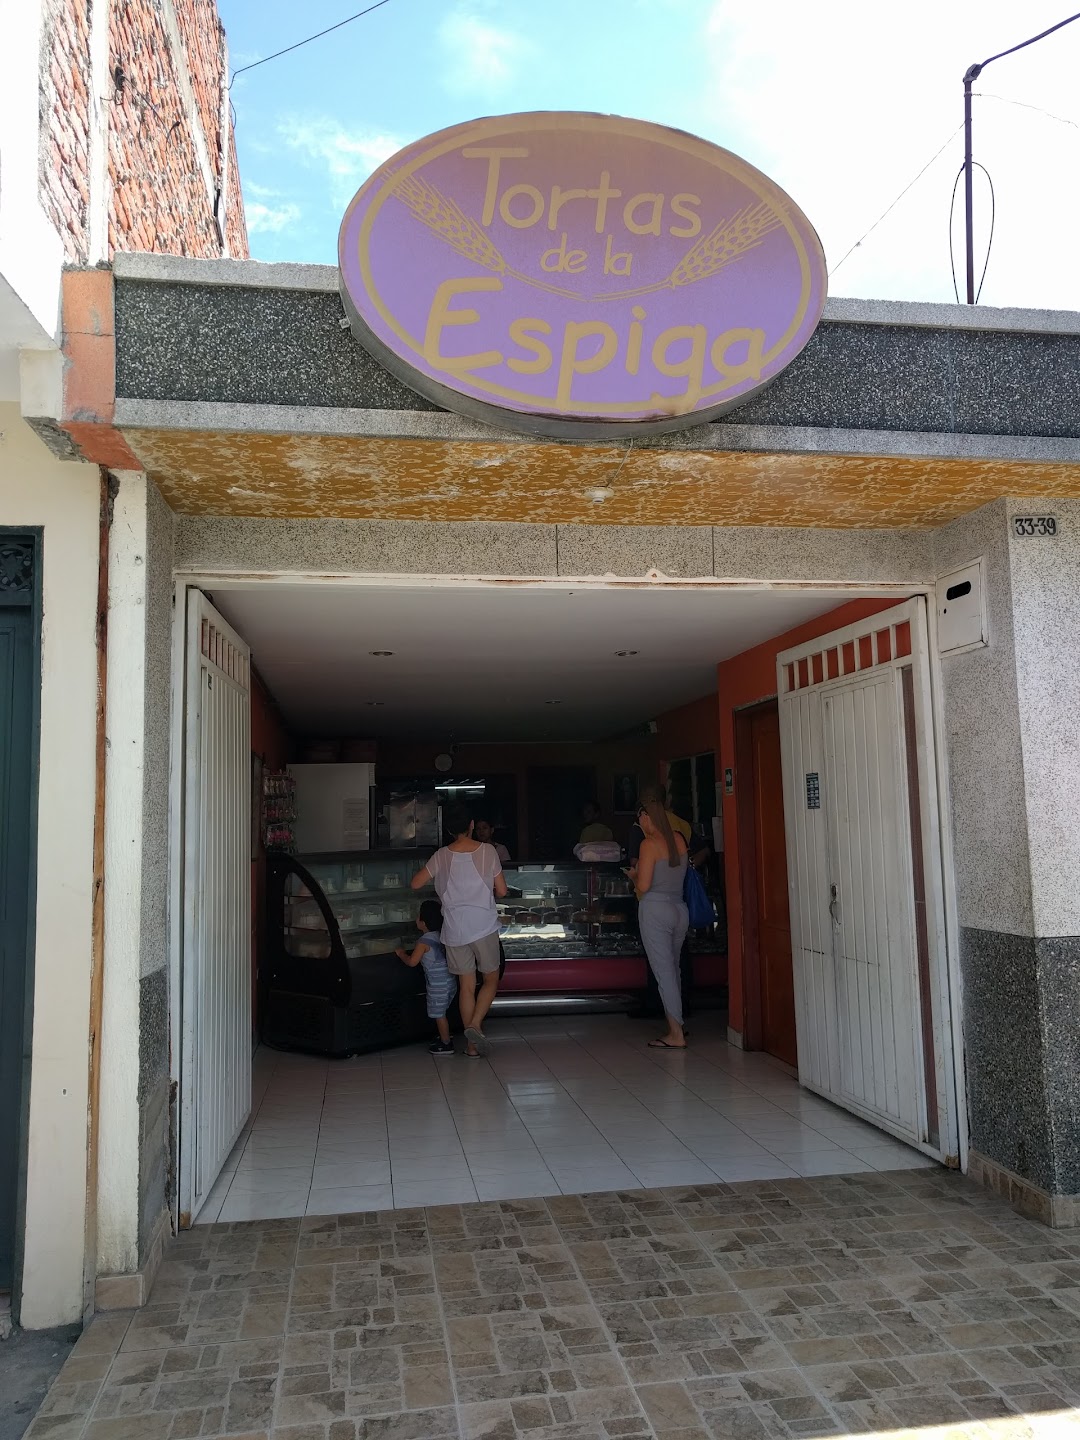 TORTAS DE LA ESPIGA